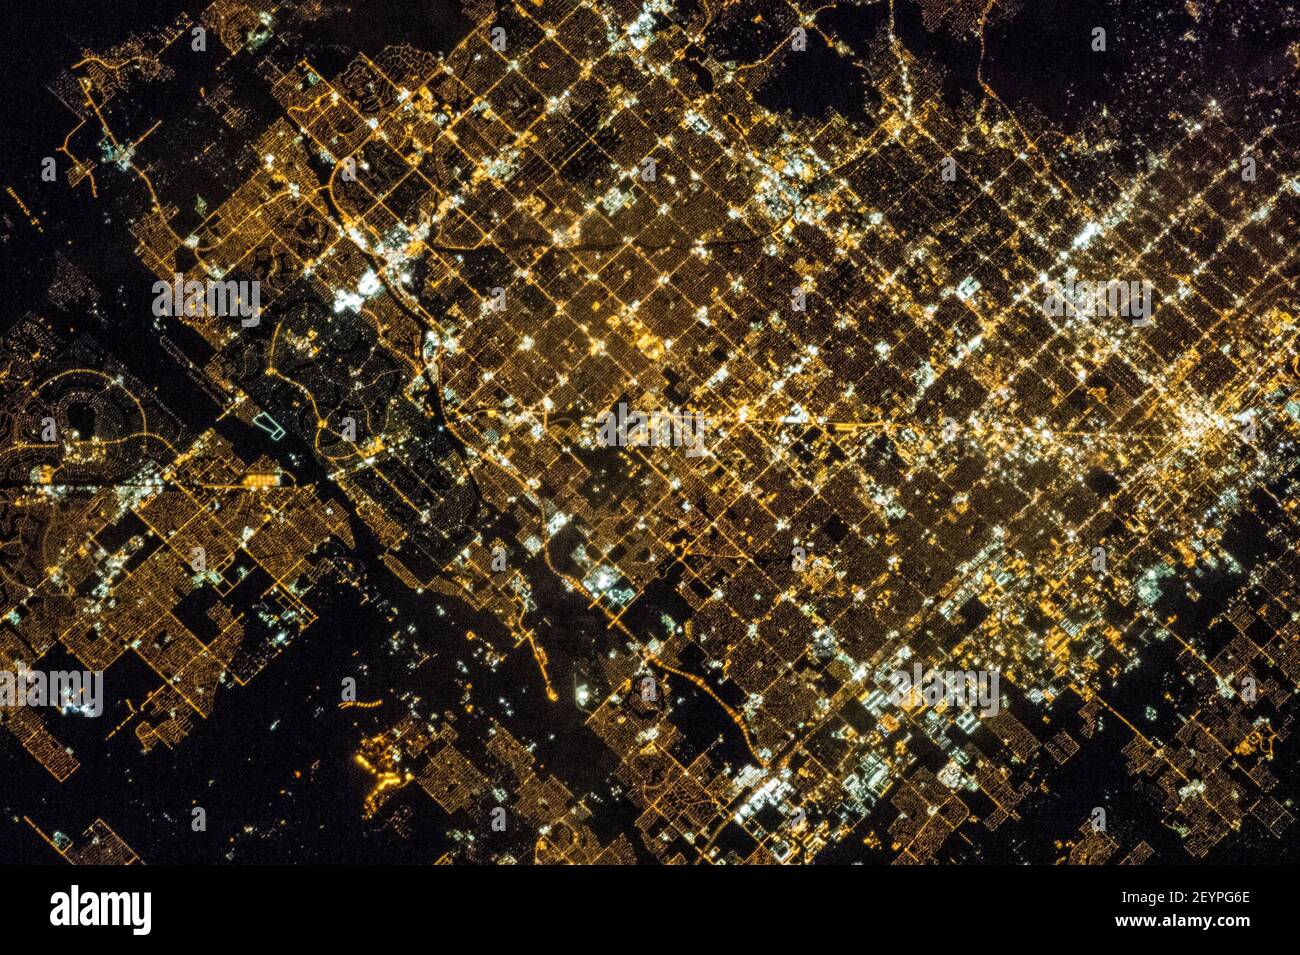 Eines der Crew-Mitglieder der Expedition 35 auf der Internationalen Raumstation verwendete eine Standkamera mit einem 400 Millimeter Objektiv, um dieses nächtliche Bild der Gegend von Phoenix, Arizona, am 16. März 2013 aufzunehmen. Wie viele große städtische Gebiete der zentralen und westlichen Vereinigten Staaten, ist die Phoenix Metropolregion entlang eines regelmäßigen Netzes von Stadtblöcken und Straßen angelegt. Während des Tages sichtbar, ist dieses Raster am deutlichsten in der Nacht, wenn das Muster der Straßenbeleuchtung ist deutlich sichtbar von oben -- im Falle dieses Fotos, aus dem niedrigen Erdumlaufpunkt der Internationalen Raumstation Stockfoto